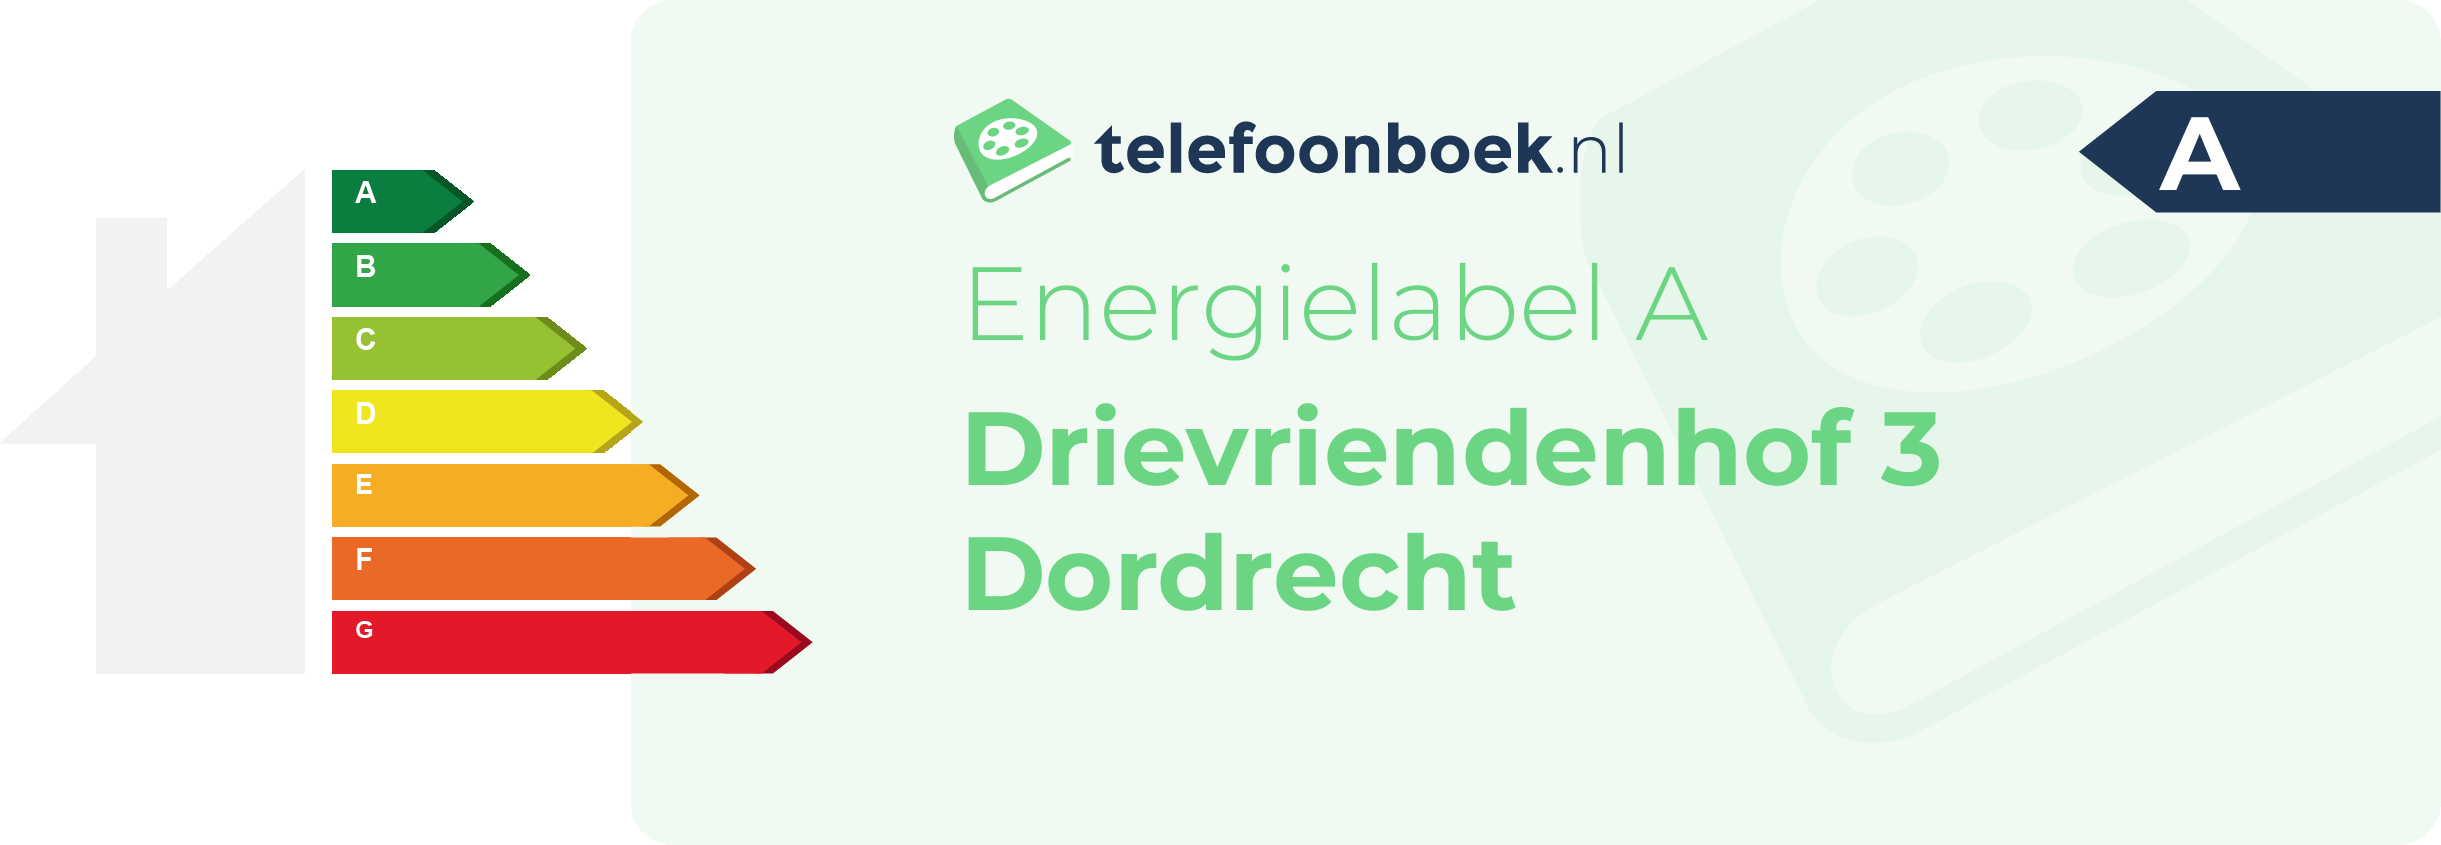 Energielabel Drievriendenhof 3 Dordrecht